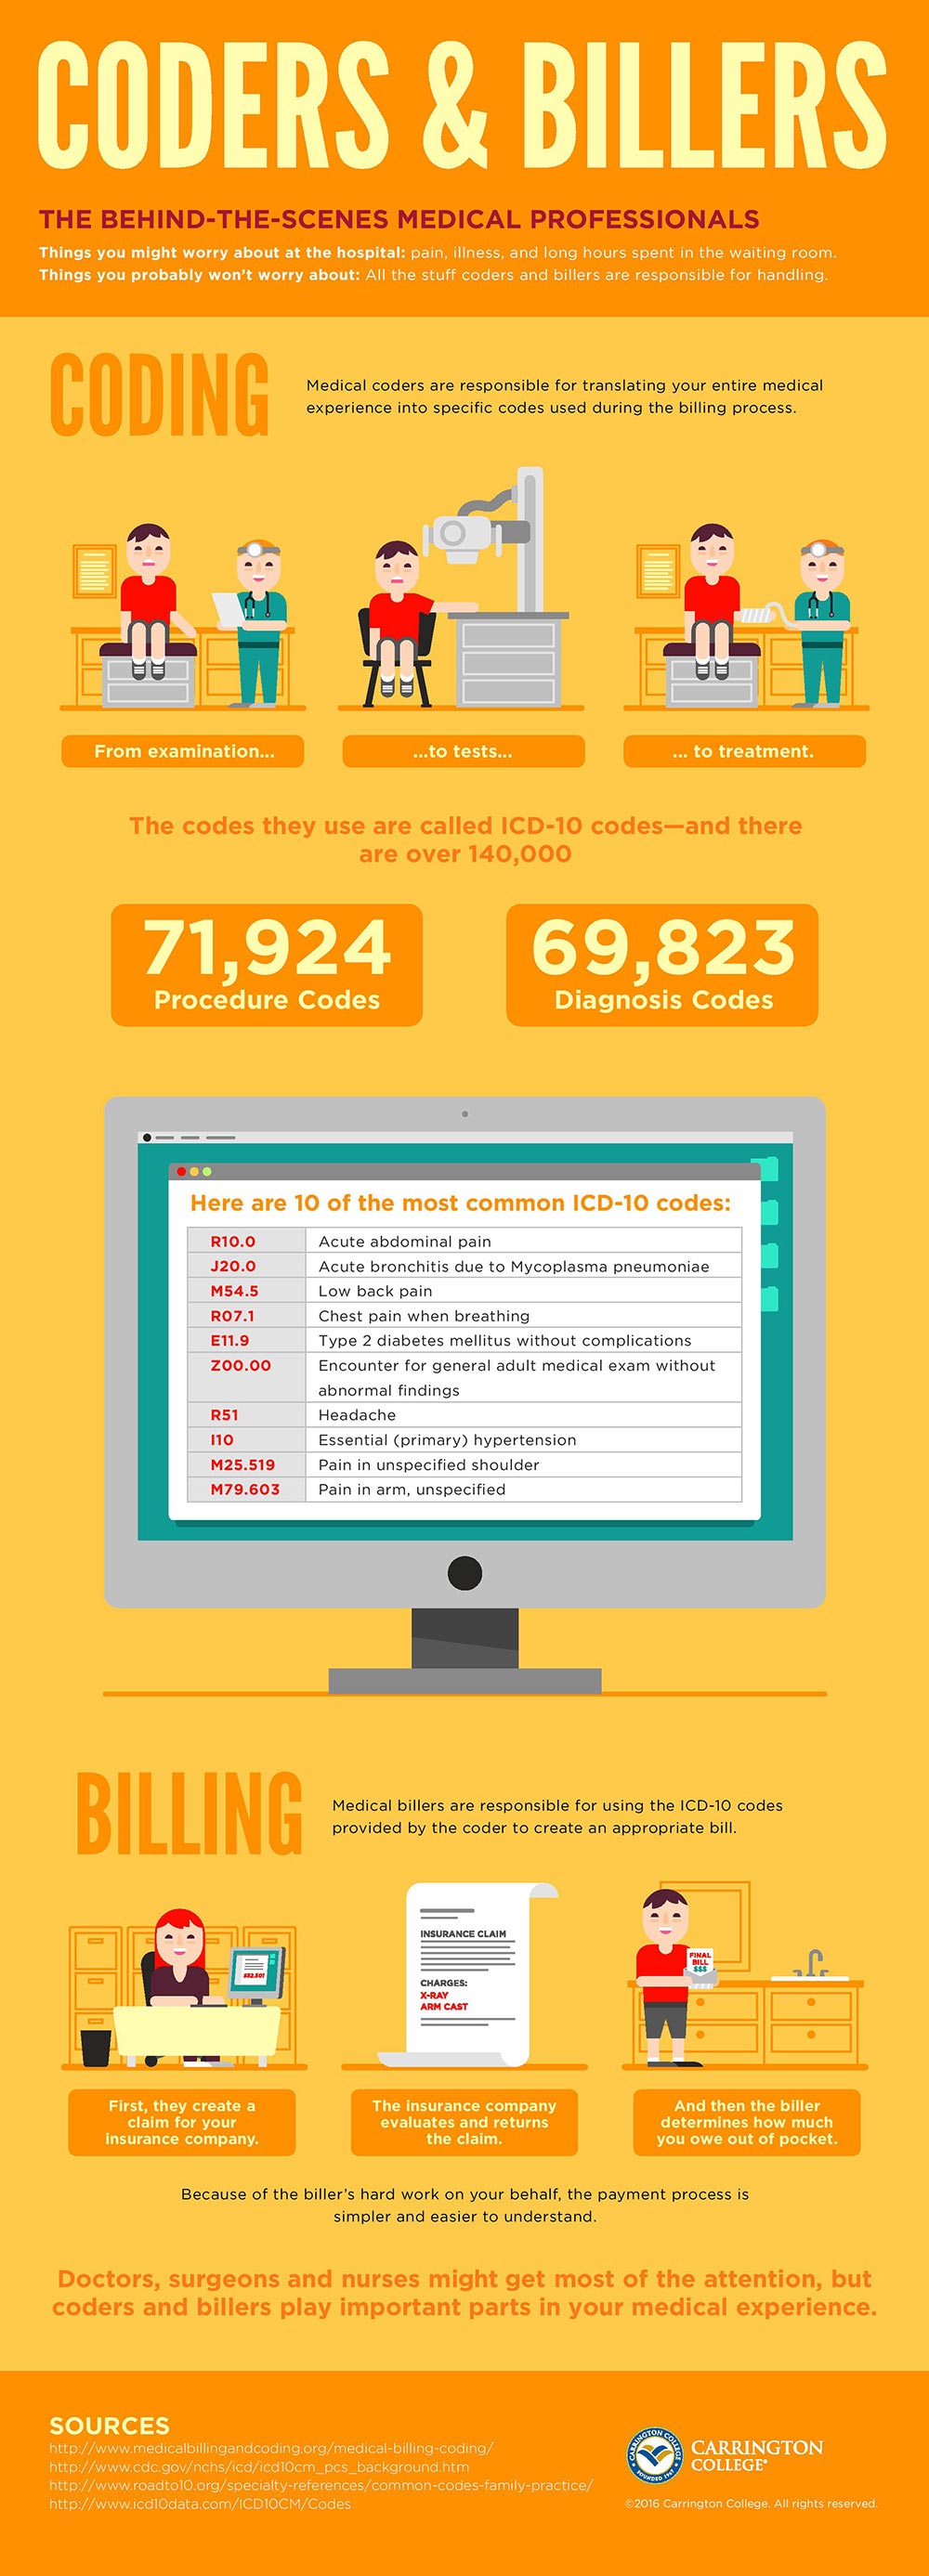 Medical Billing vs Medical Coding Infographic